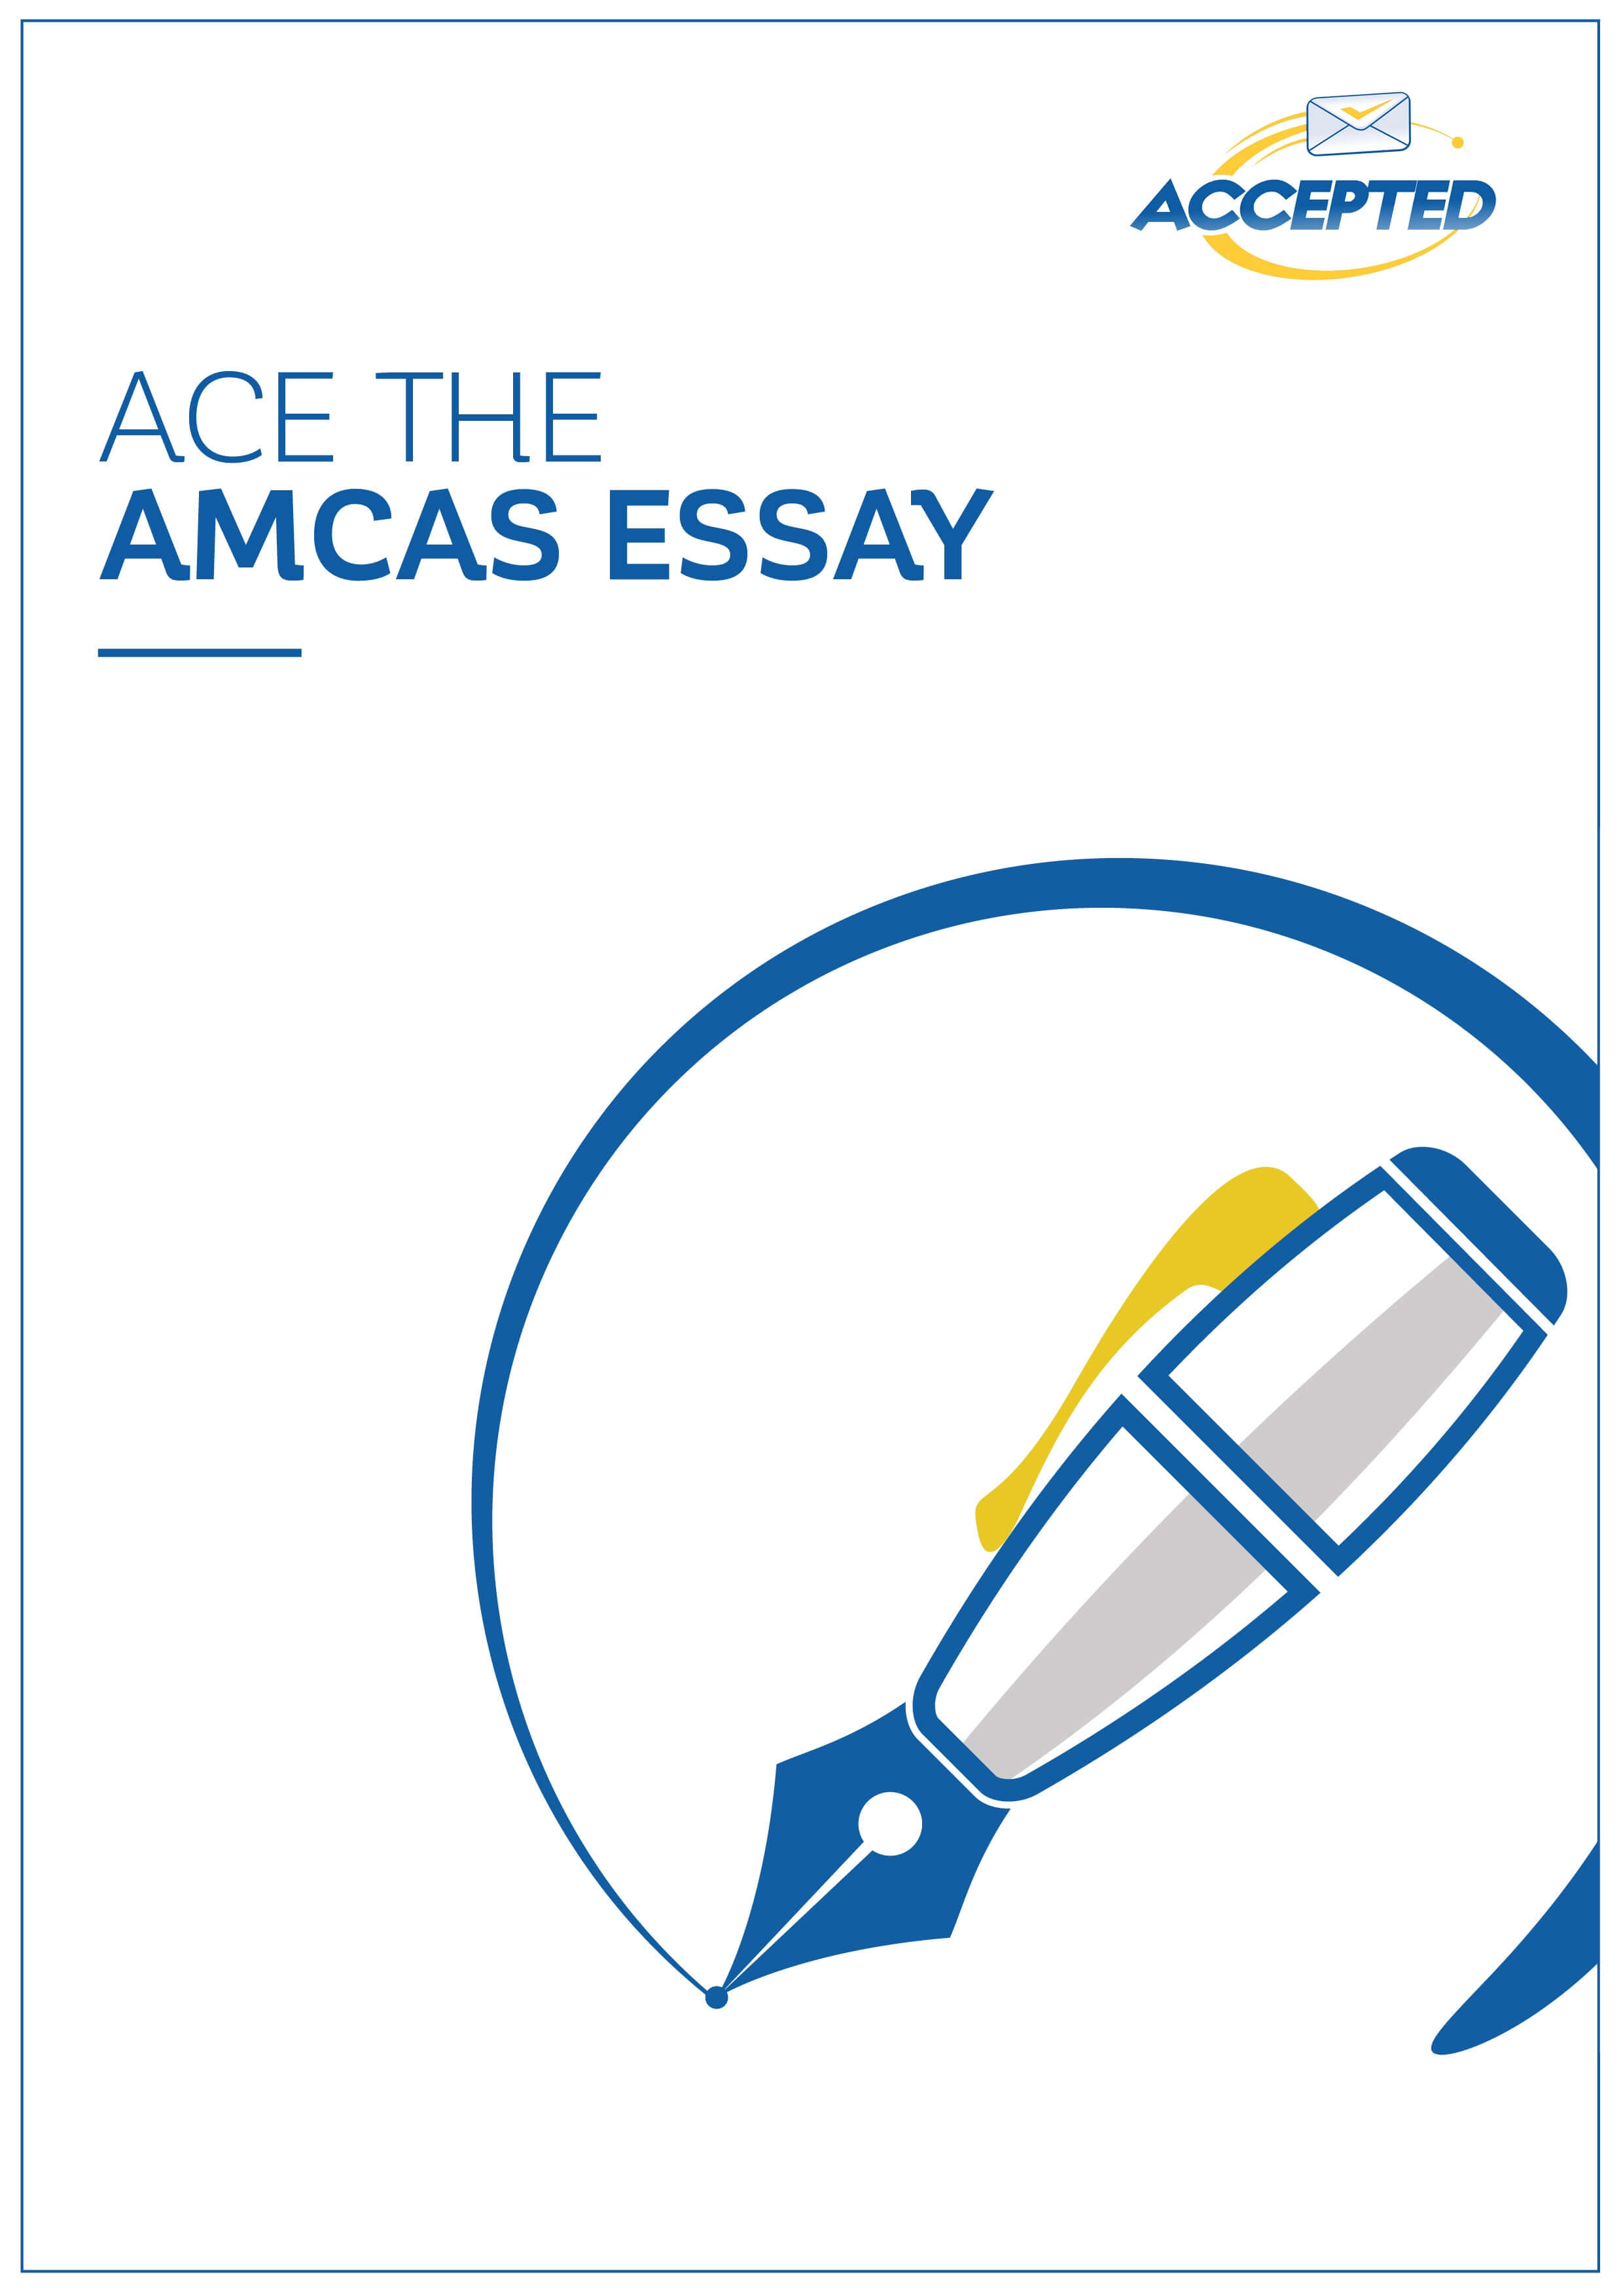 Ace The AMCAS Essay